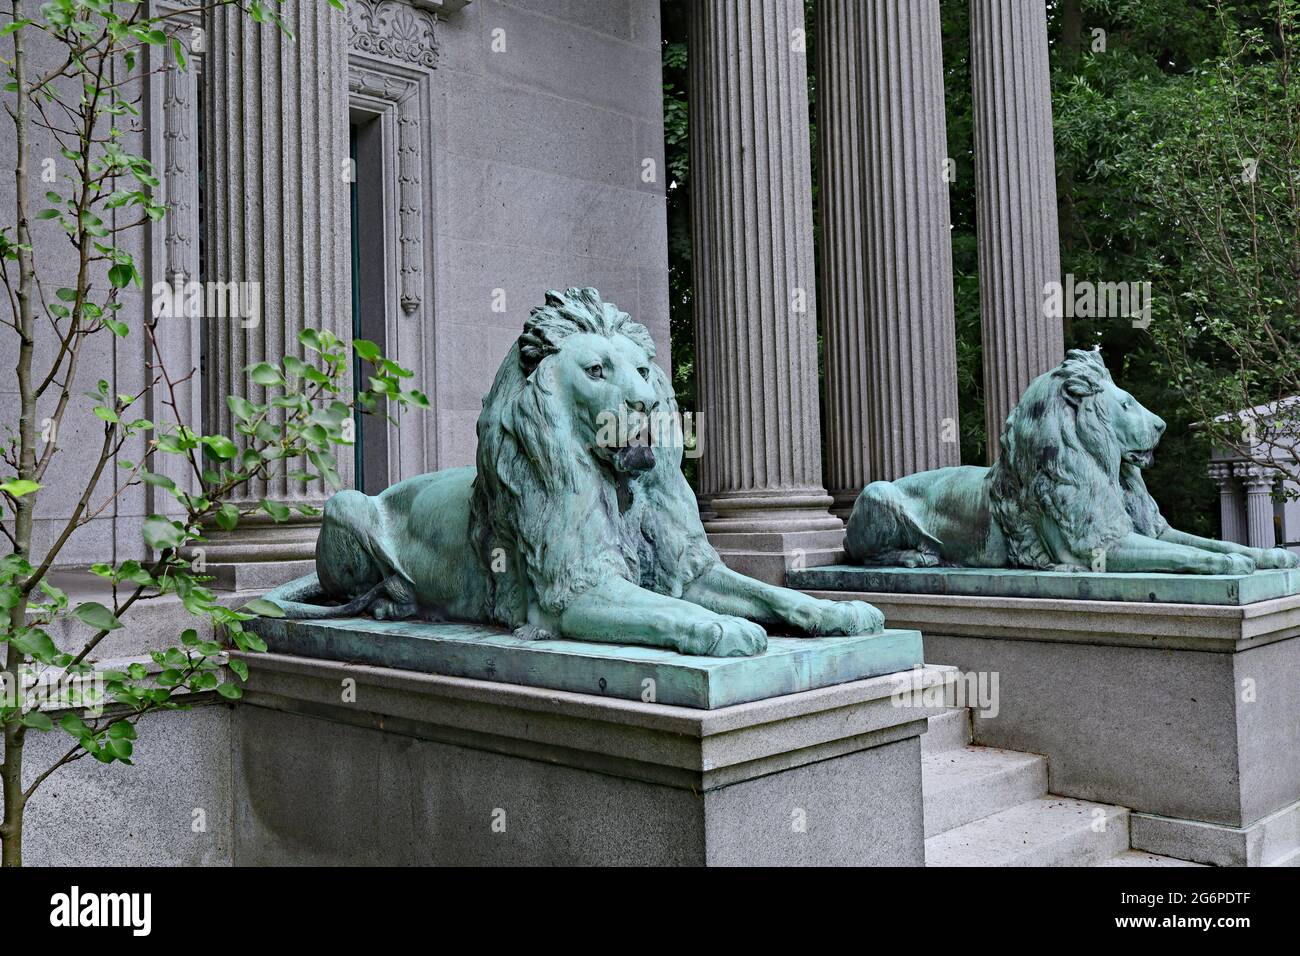 Gran mausoleo de estilo clásico de una familia rica, custodiada por leones, en el cementerio Mount Pleasant, Toronto Foto de stock